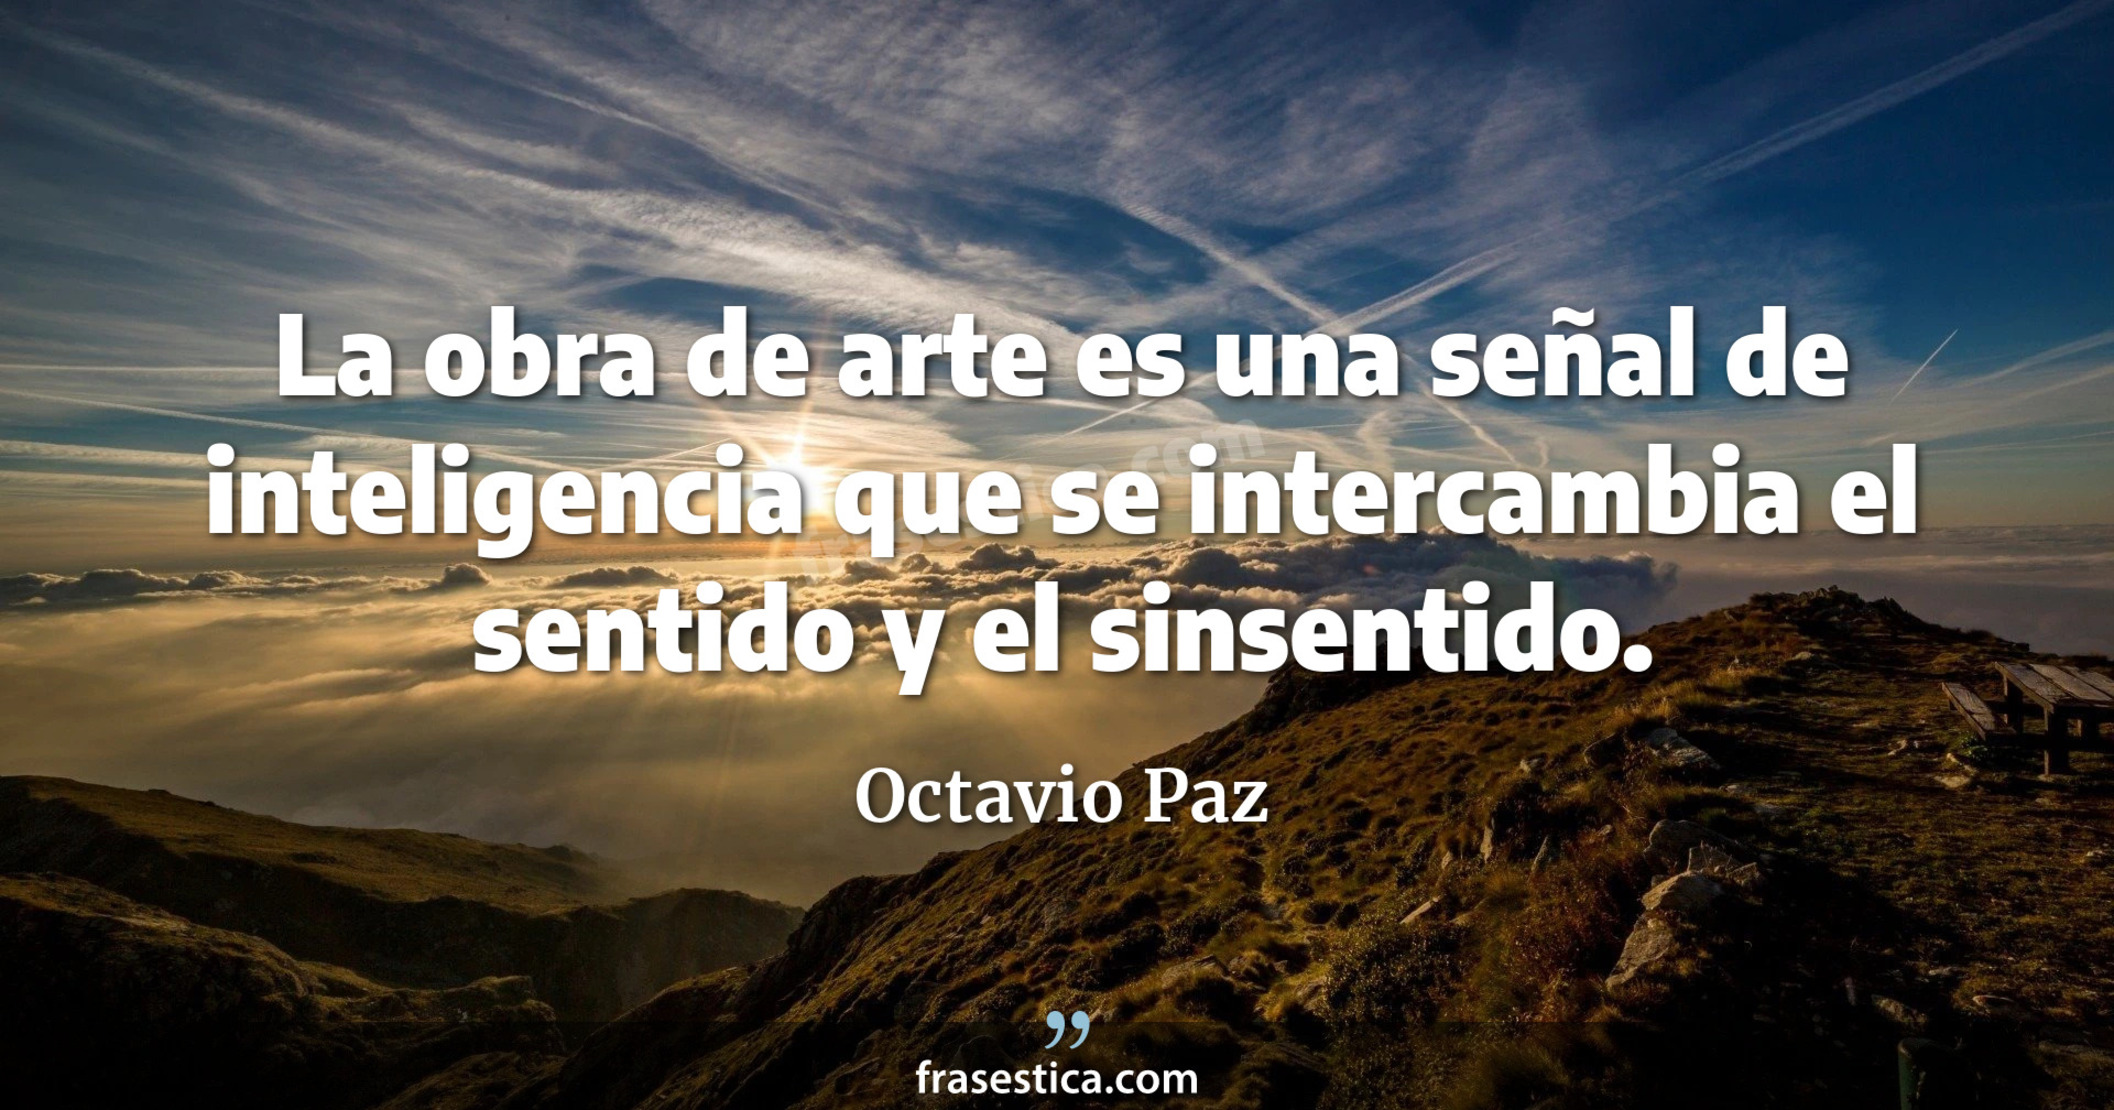 La obra de arte es una señal de inteligencia que se intercambia el sentido y el sinsentido. - Octavio Paz